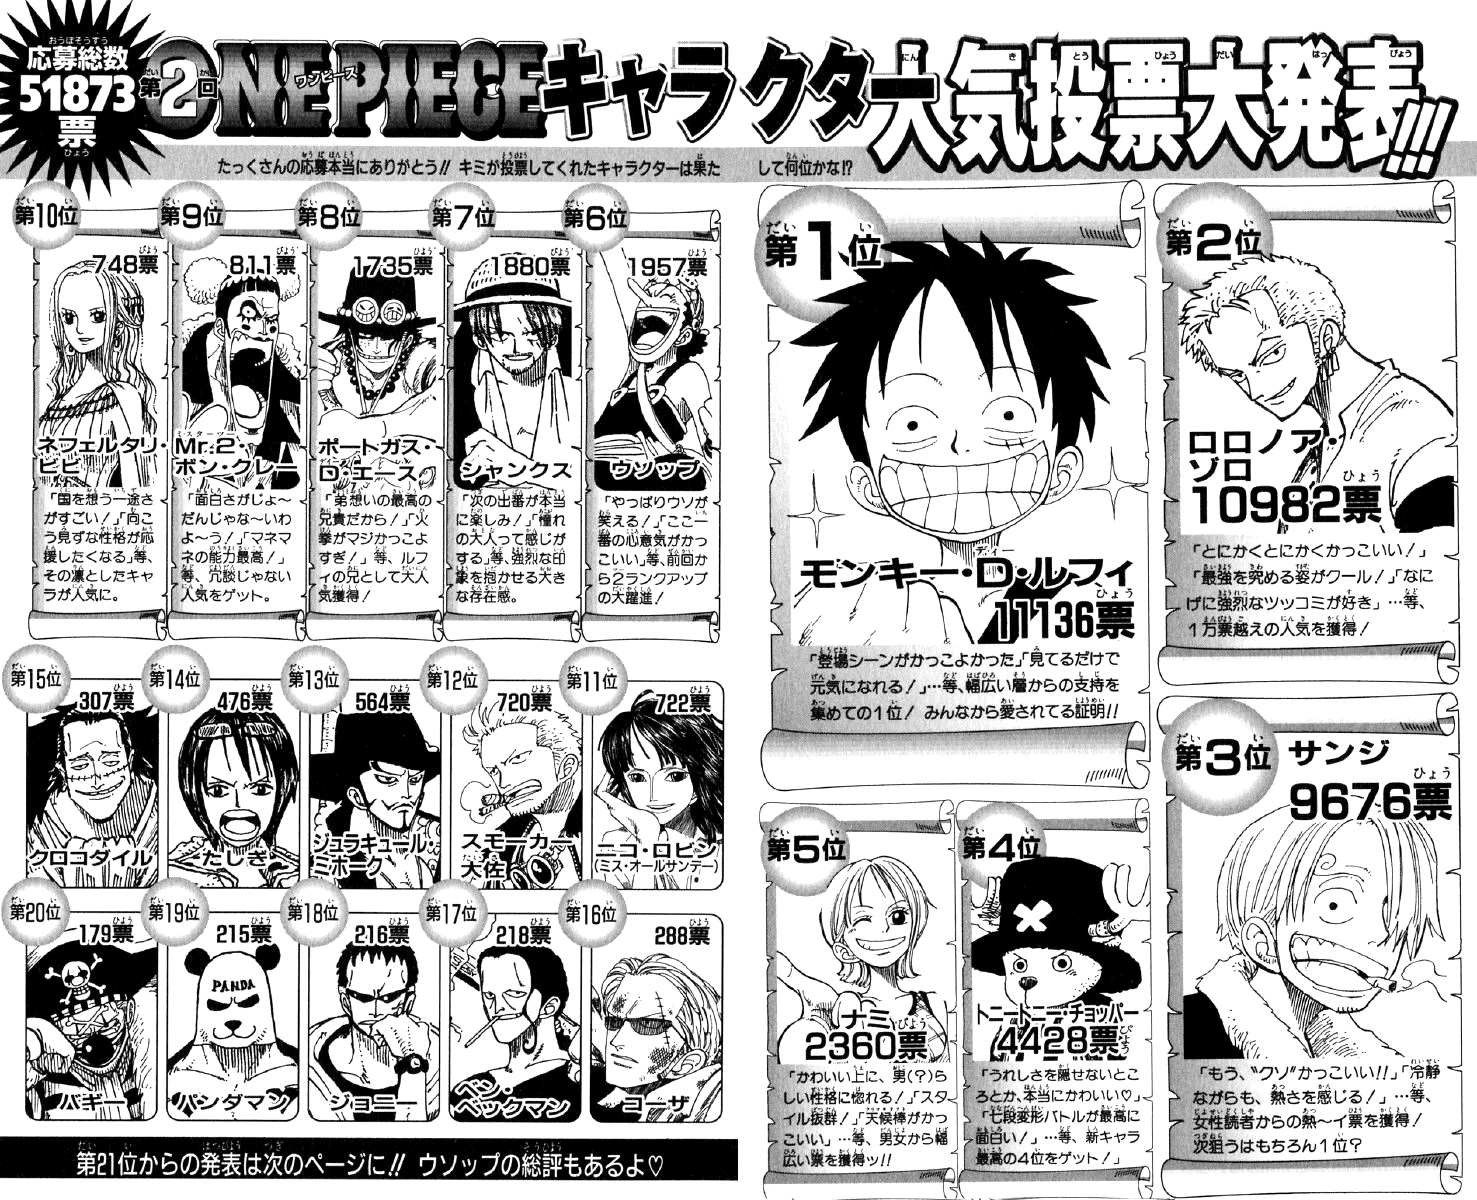 Popularity Polls One Piece Wiki Fandom